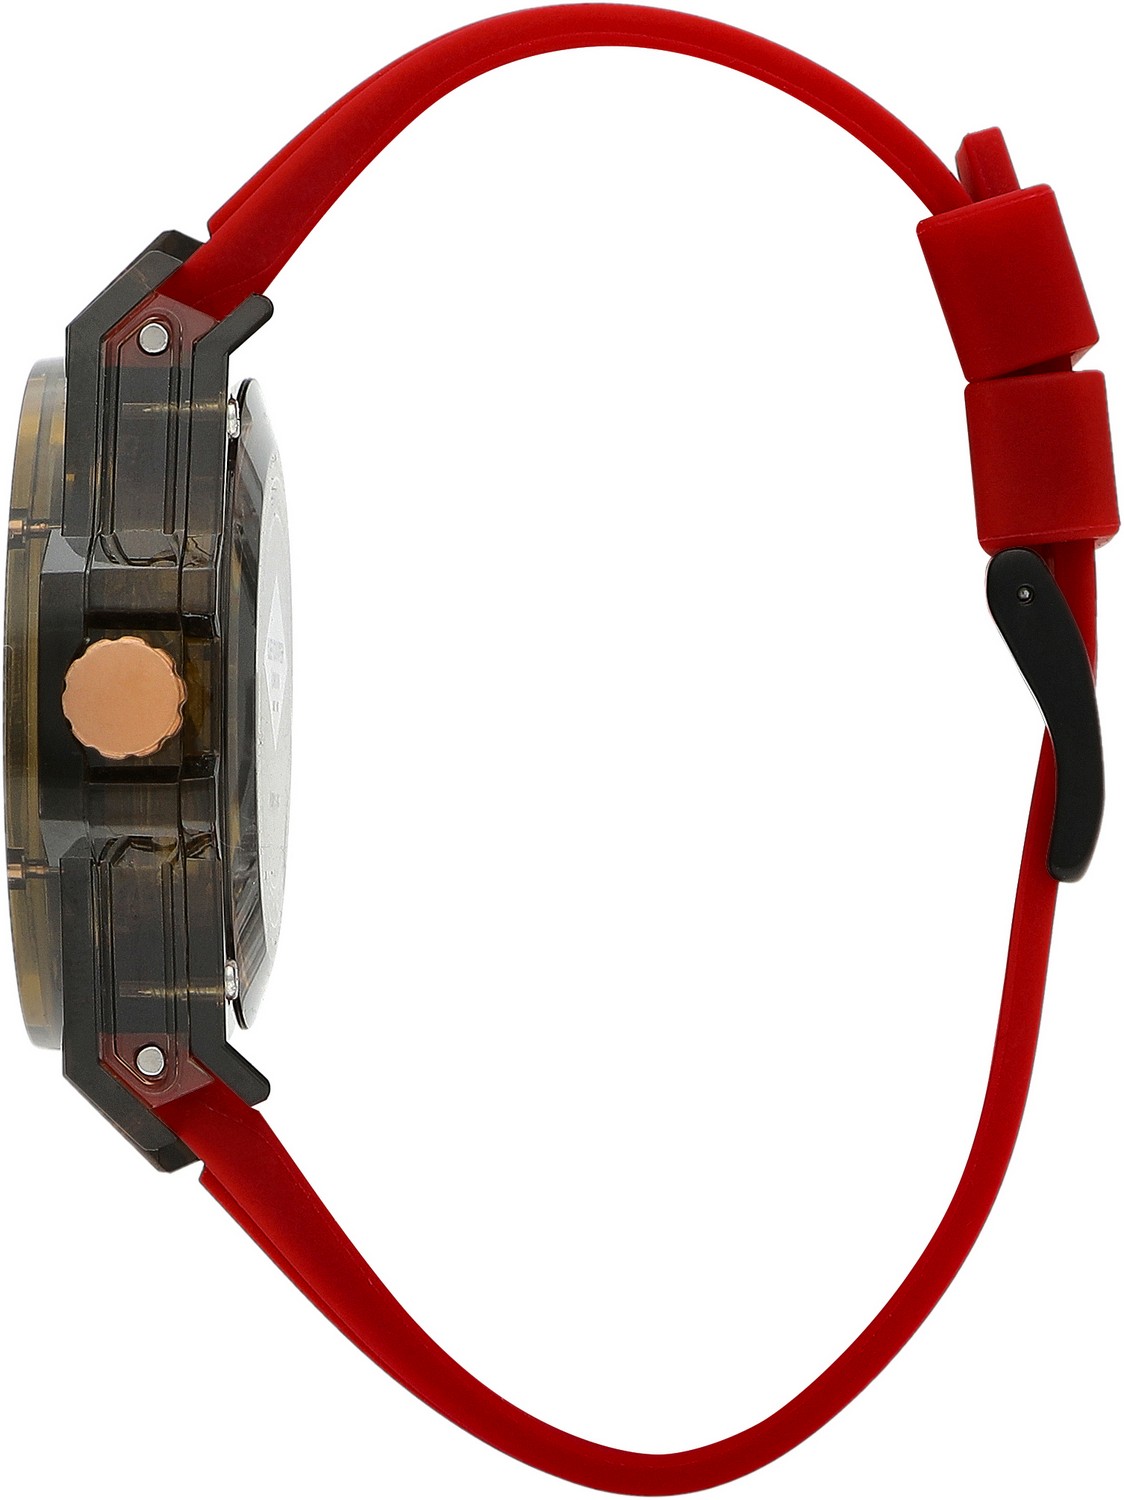 LEE COOPER  Мужские часы, кварцевый механизм, пластик, 45 мм